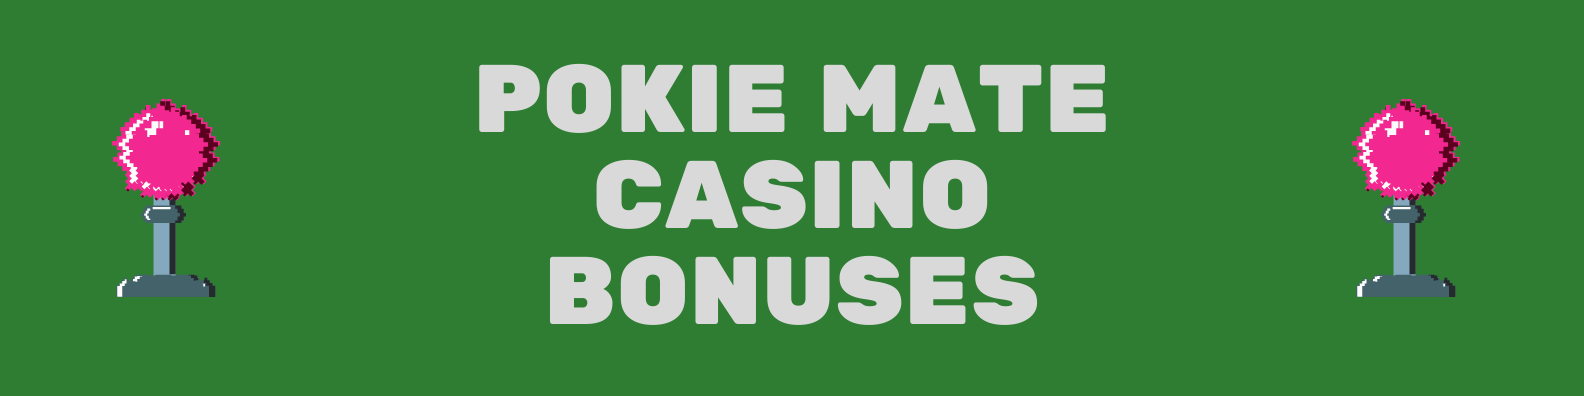 Pokie Mate Casino Bonuses